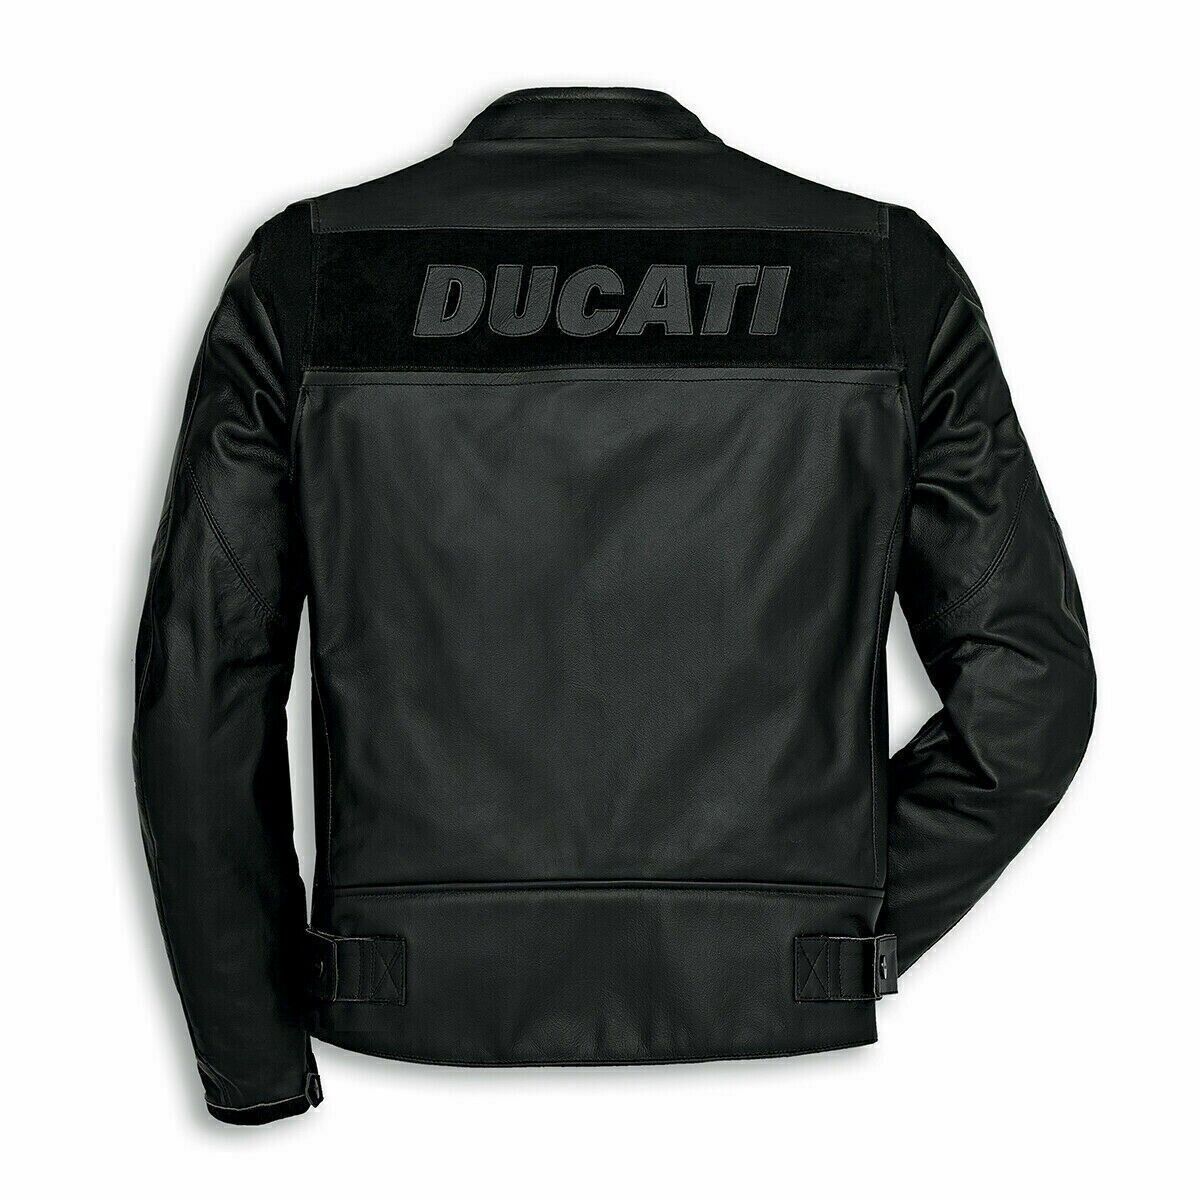 Ducati motorcycle jacket motorbike jacket cowhide leather bikers raceing jacket